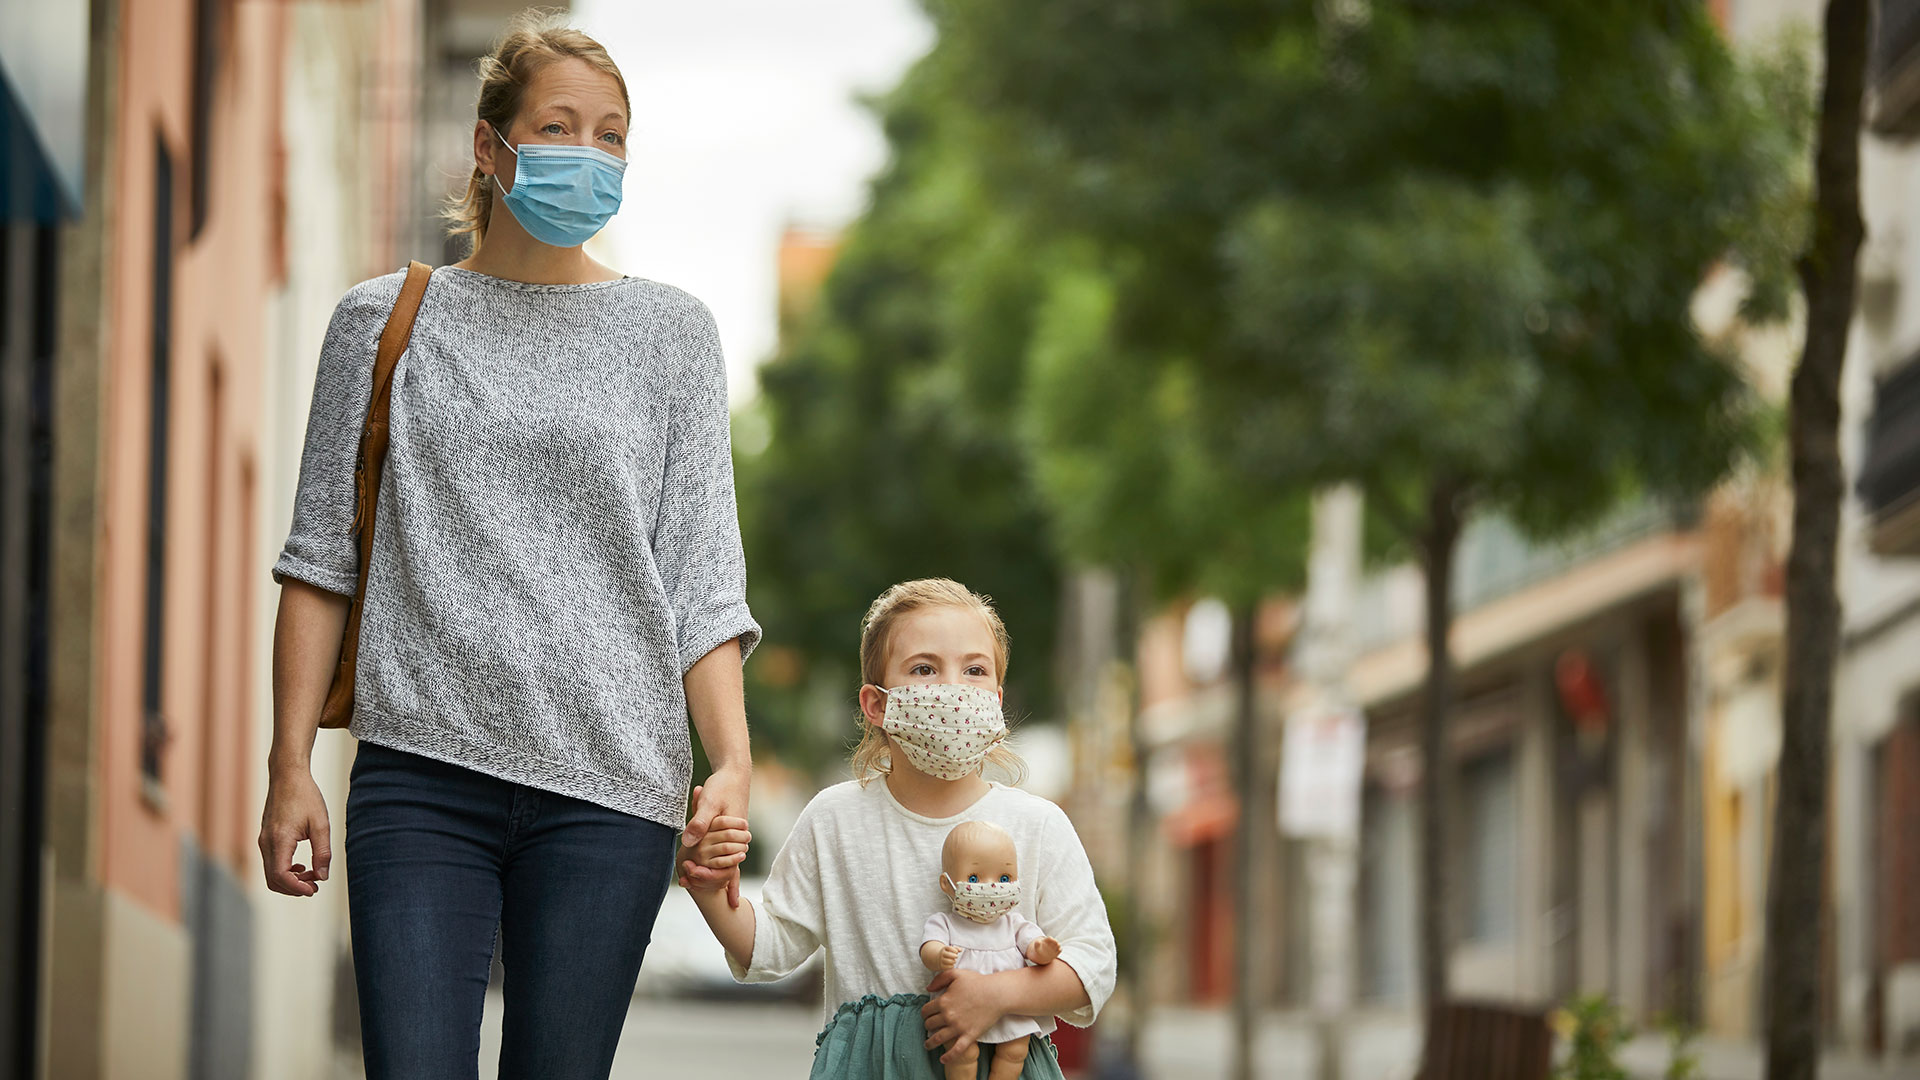 Los niños son dependientes de sus padres, por lo tanto, el impacto que la pandemia tendrá en los menores va a depender de cómo los padres transiten esta situación traumática (Getty Images)